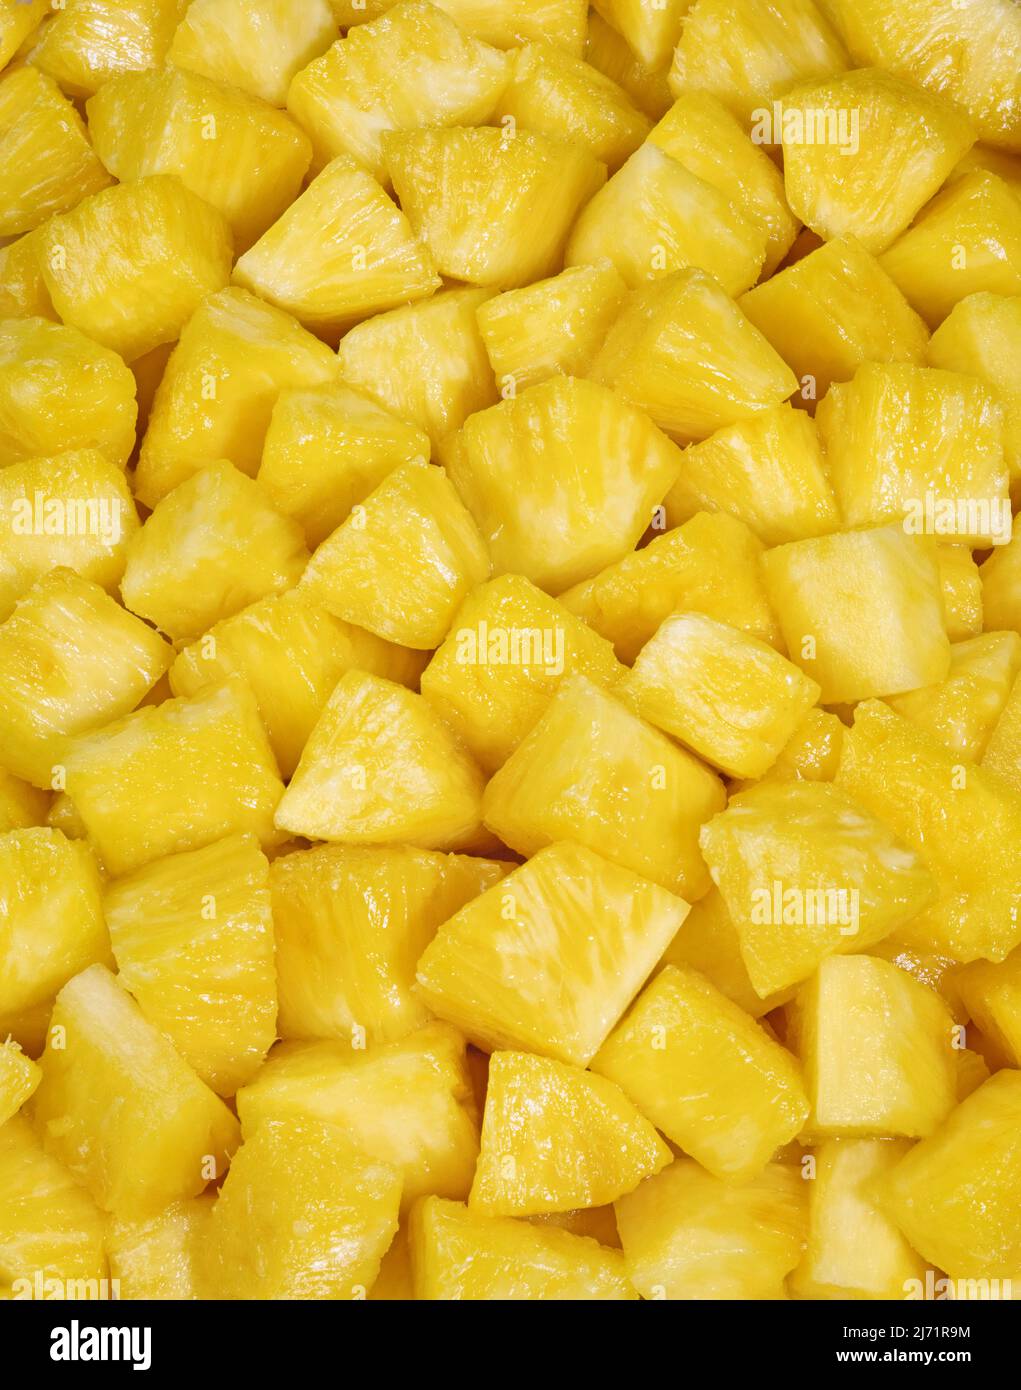 Ananas tagliato in pezzi succosi. Immagine da lucidi da 4x5 pollici. Foto Stock